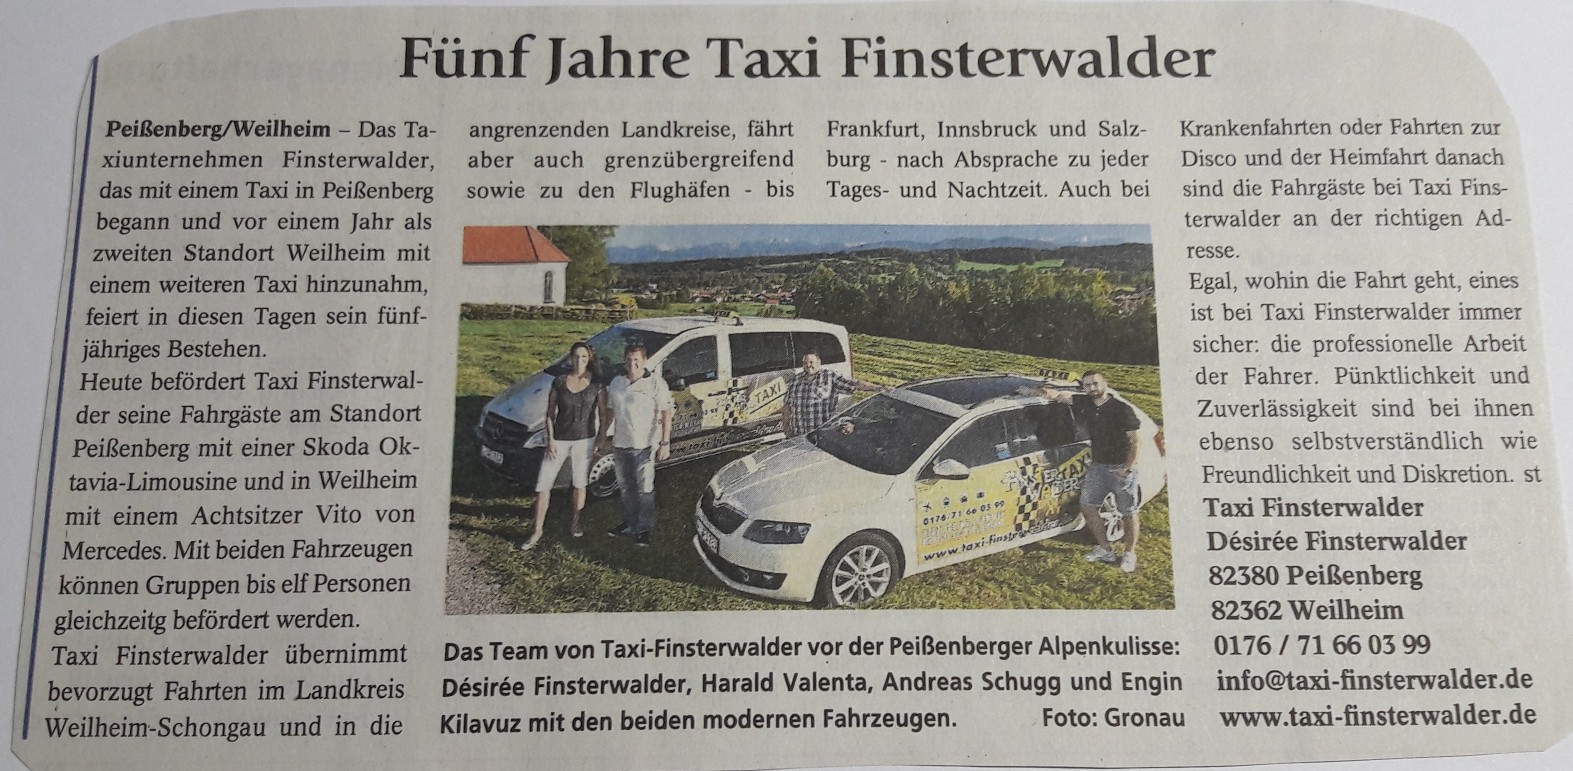 Foto eines Zeitungsartikel in dem es um "Fünf Jahre Taxi Finsterwalder" geht